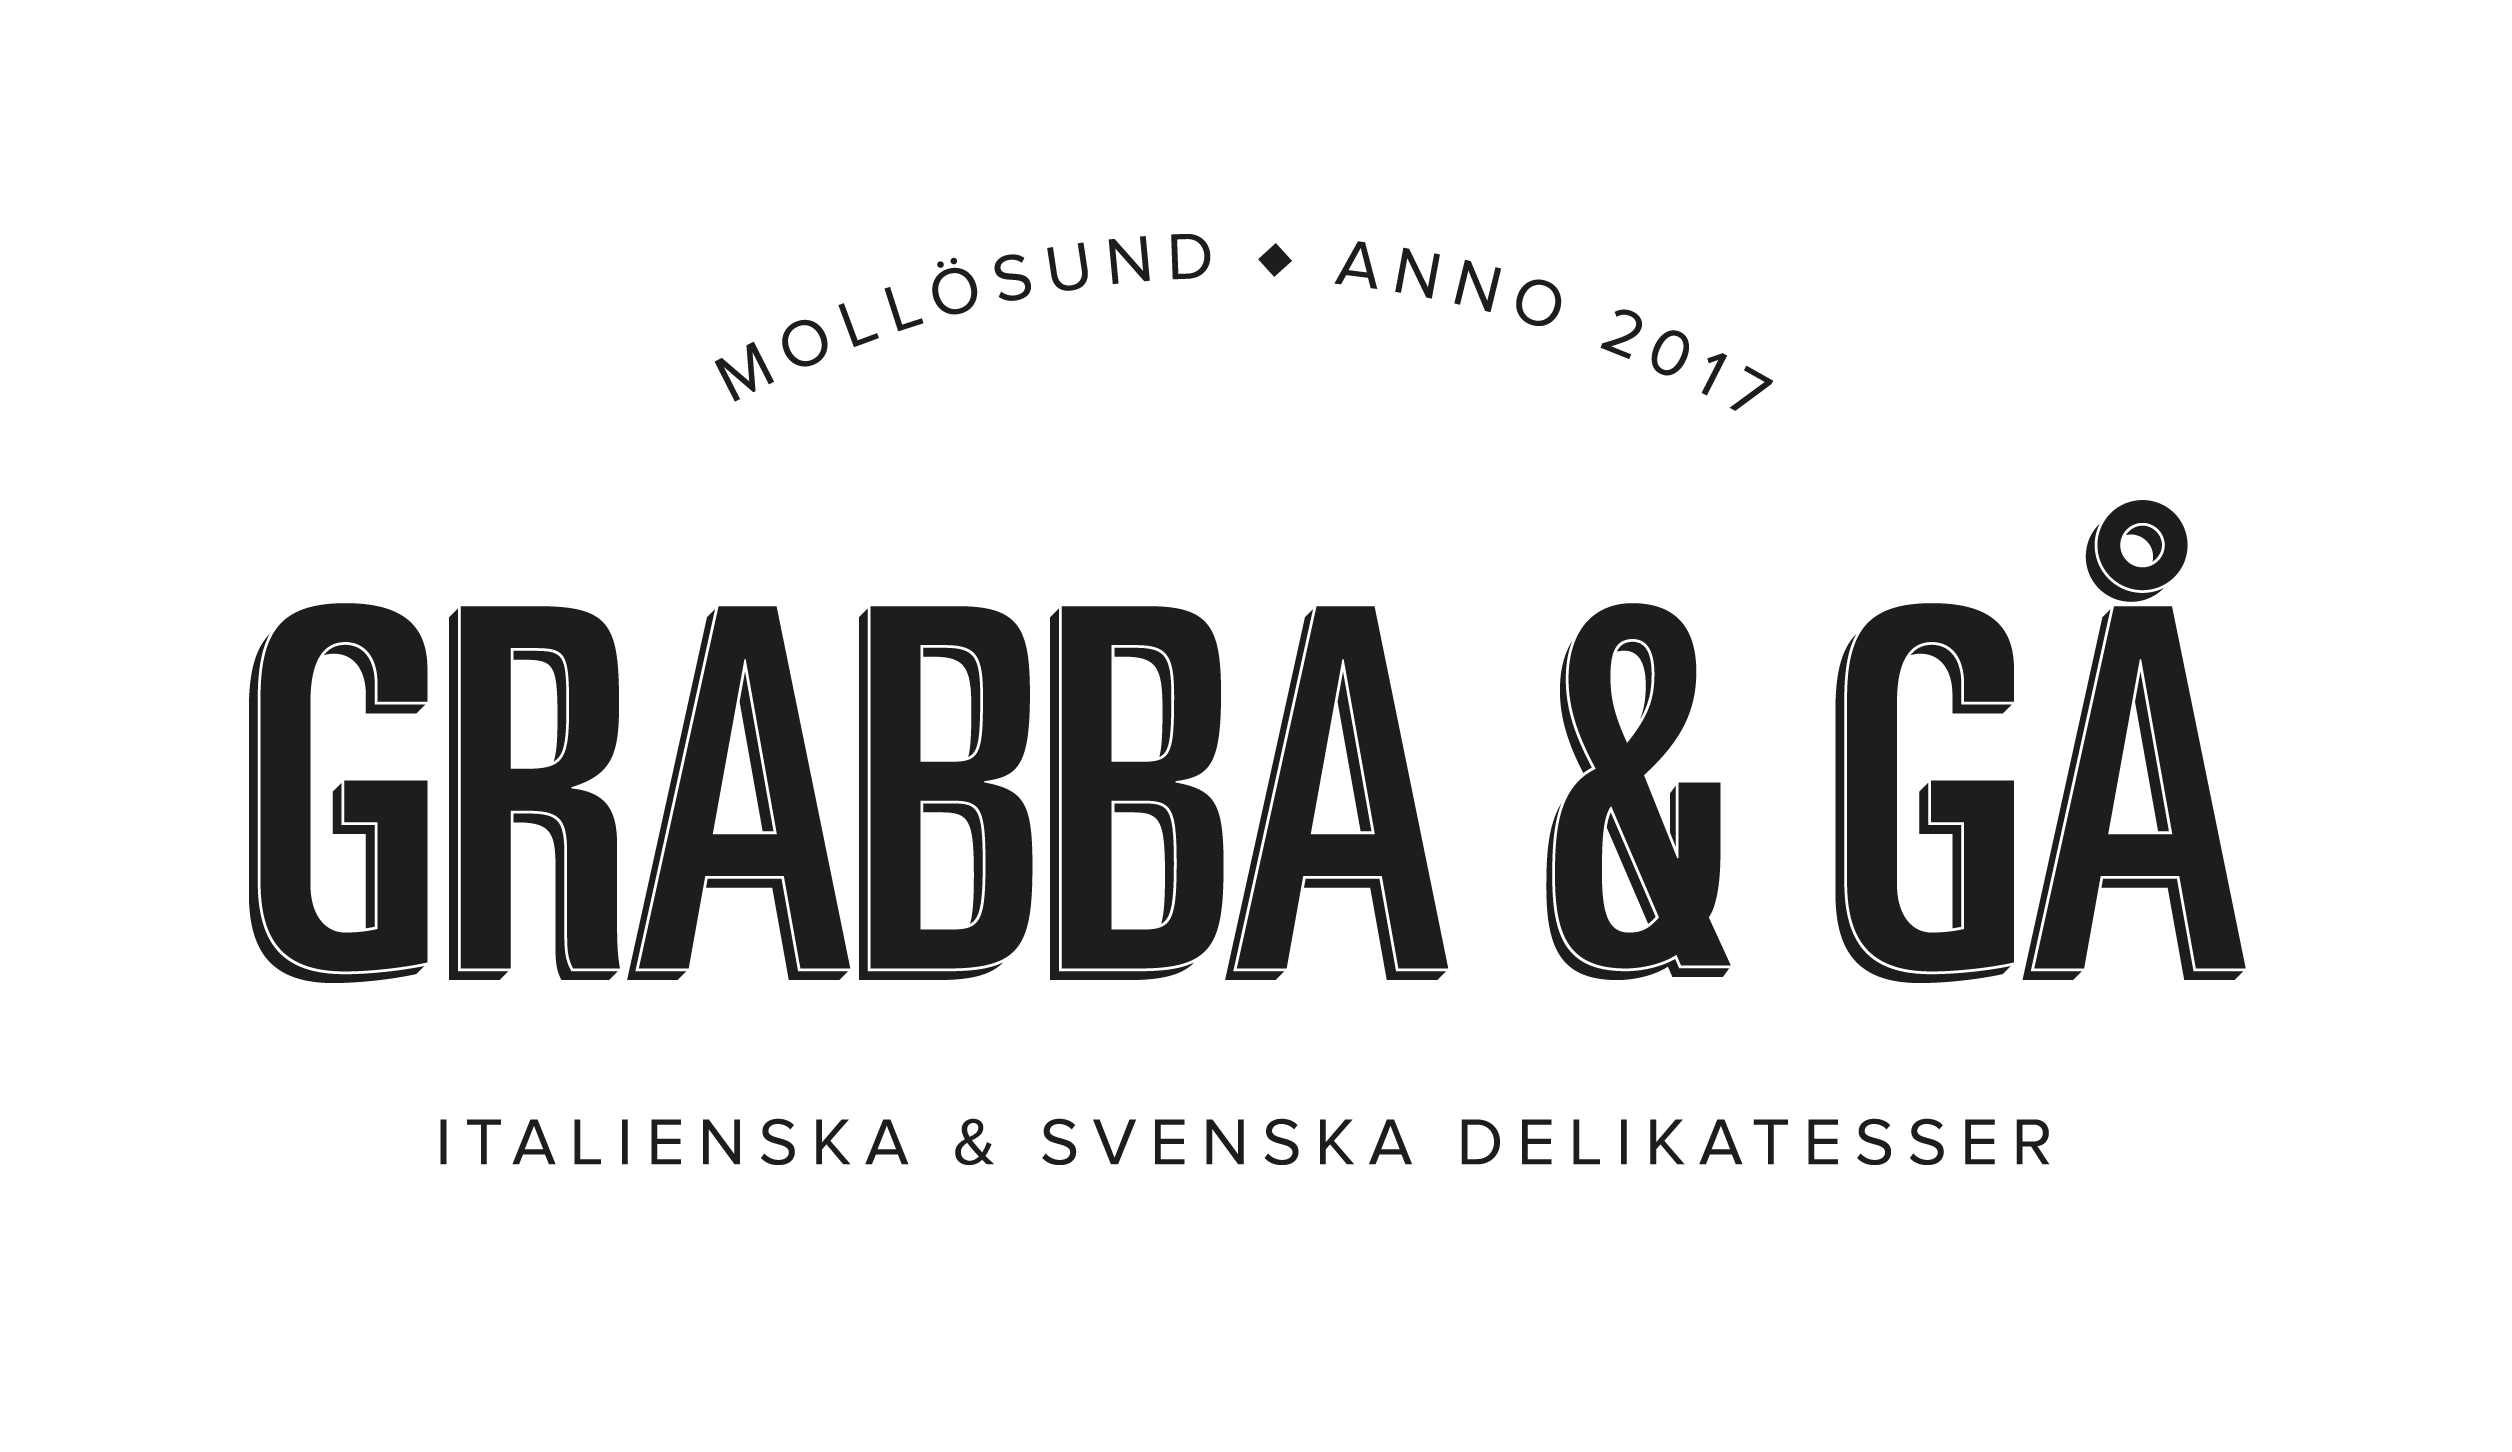 MOLLÖSUND ANNO 2017 GRABBA & GÅ ITALIENSKA & SVENSKA DELIKATESSER